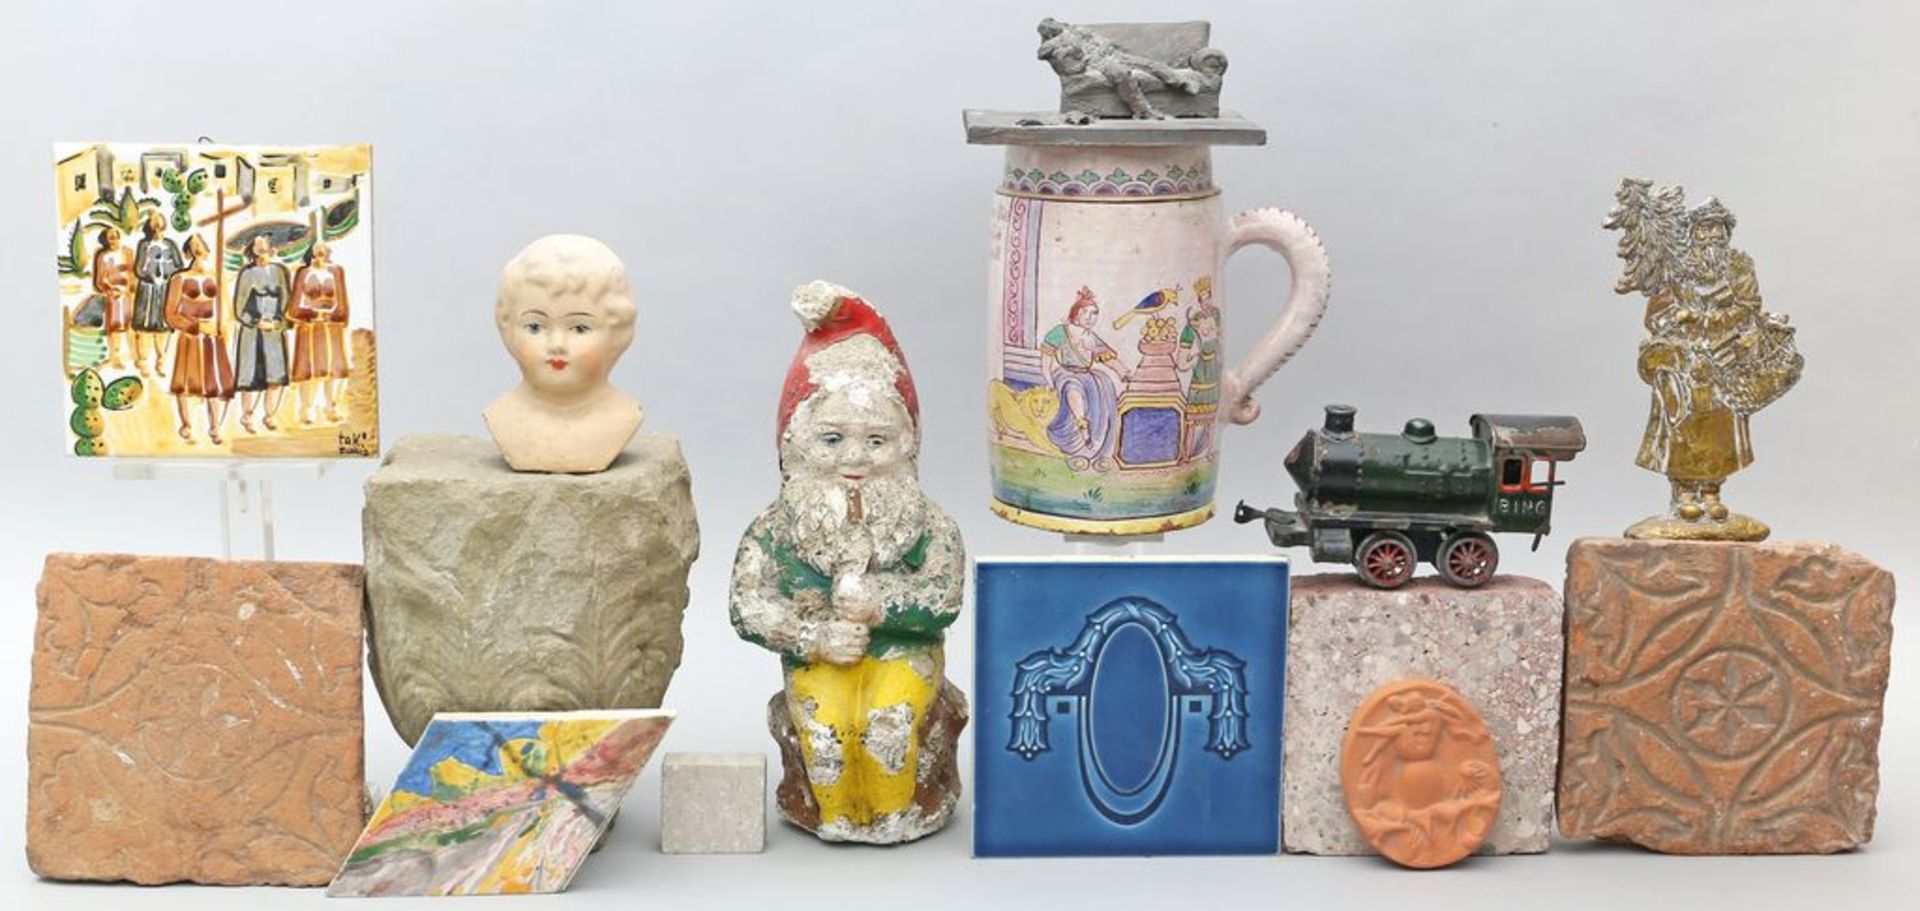 Posten Raritäten: Gartenzwerg, Krug, Puppenkopf, Skulptur eines liegenden Mannes, Lok